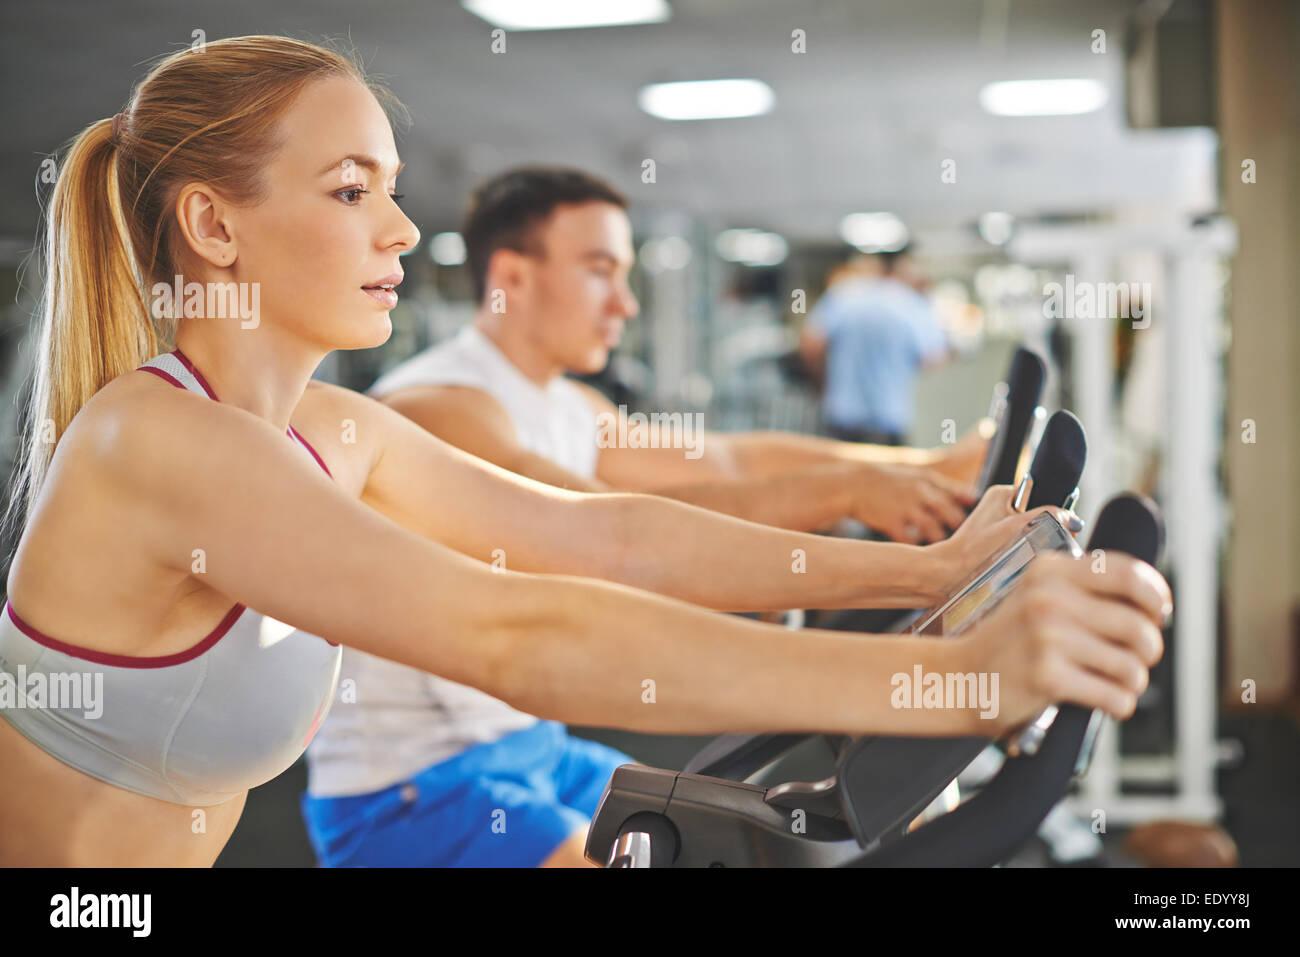 Porträt der jungen Frau und Mann beim Training im Fitness-Studio Stockfoto